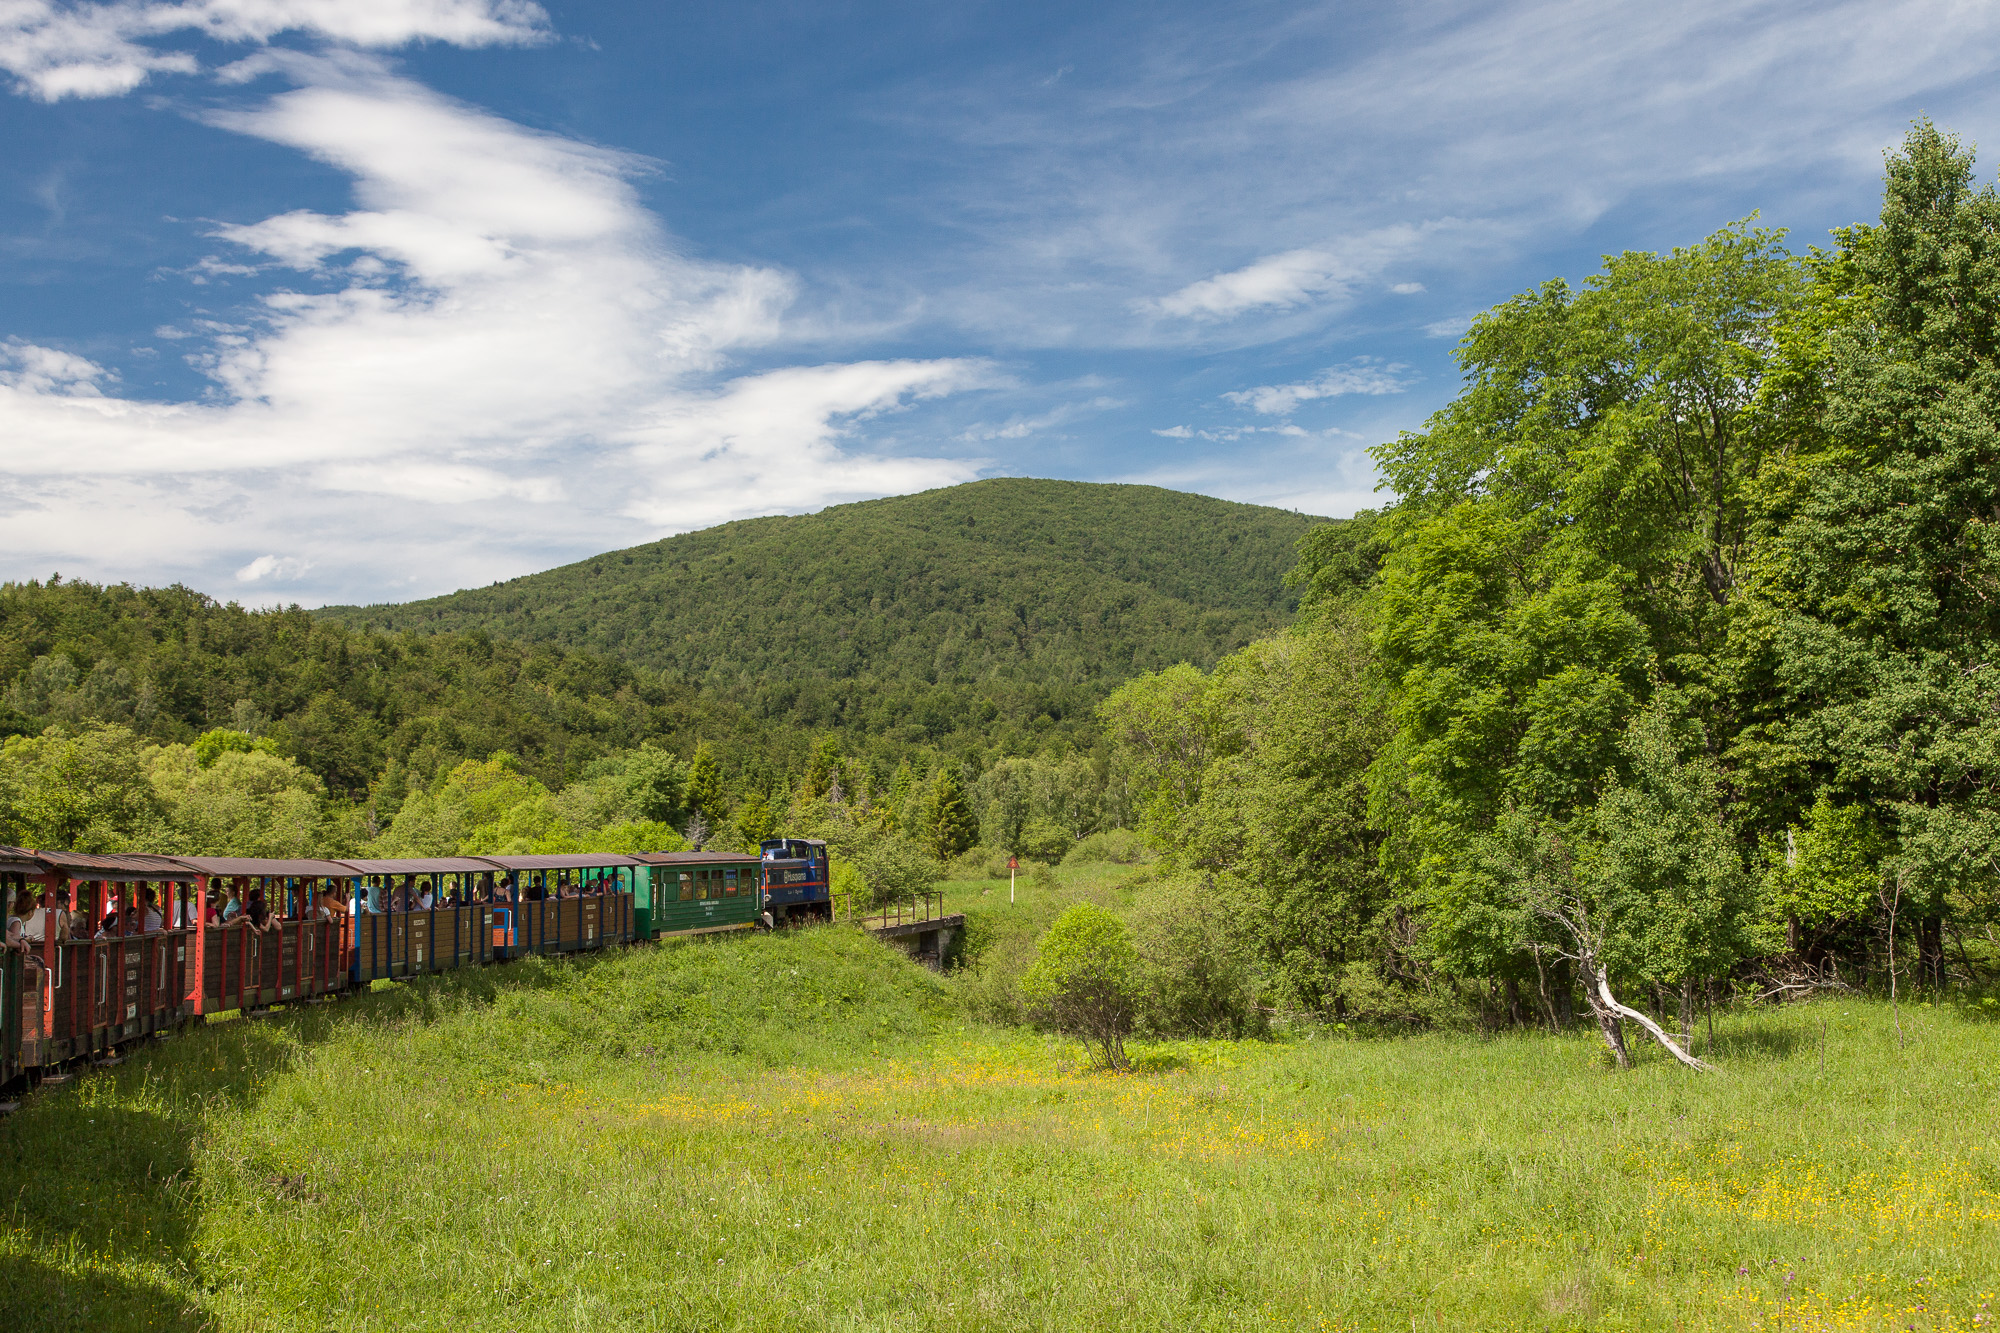 Letni dzień. Pociąg z wagonami jedzie po torach. Widać ludzi w otwartych wagonikach. W tle pokryta trzewami góra.